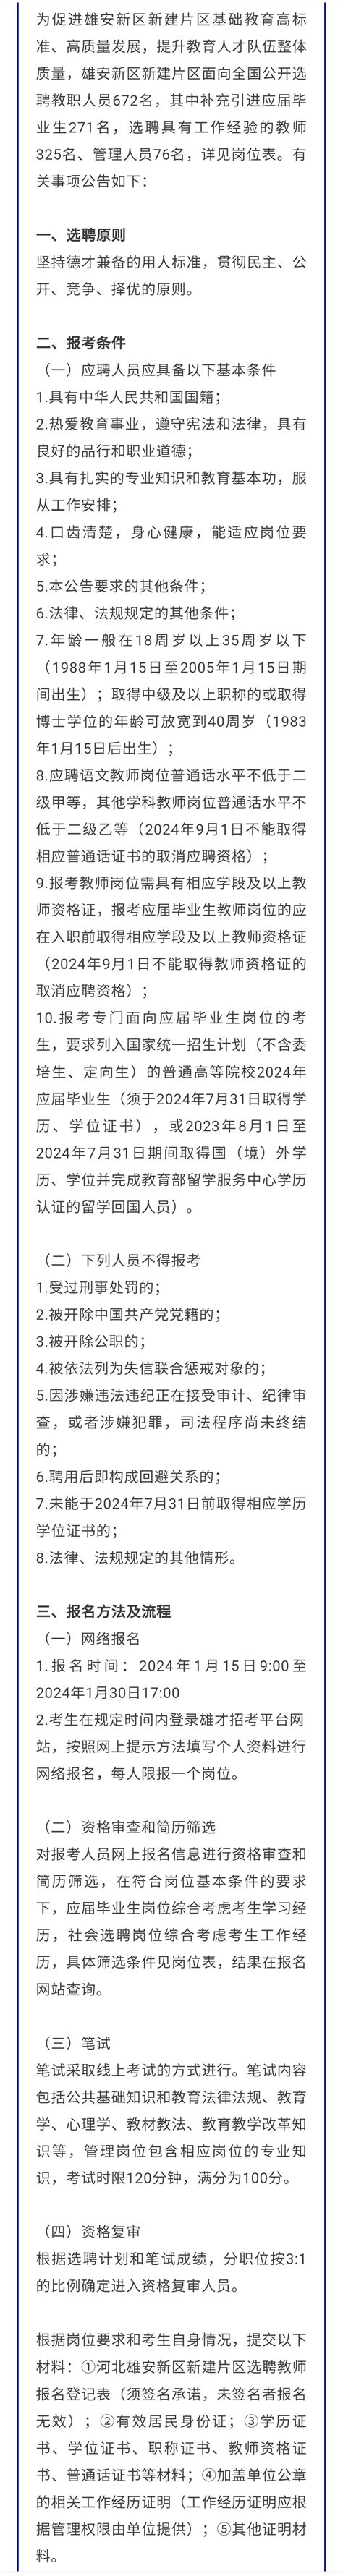 2022北京援建雄安新区交钥匙项目中学公开招聘教职工47名报名截止时间12月31日（河北）